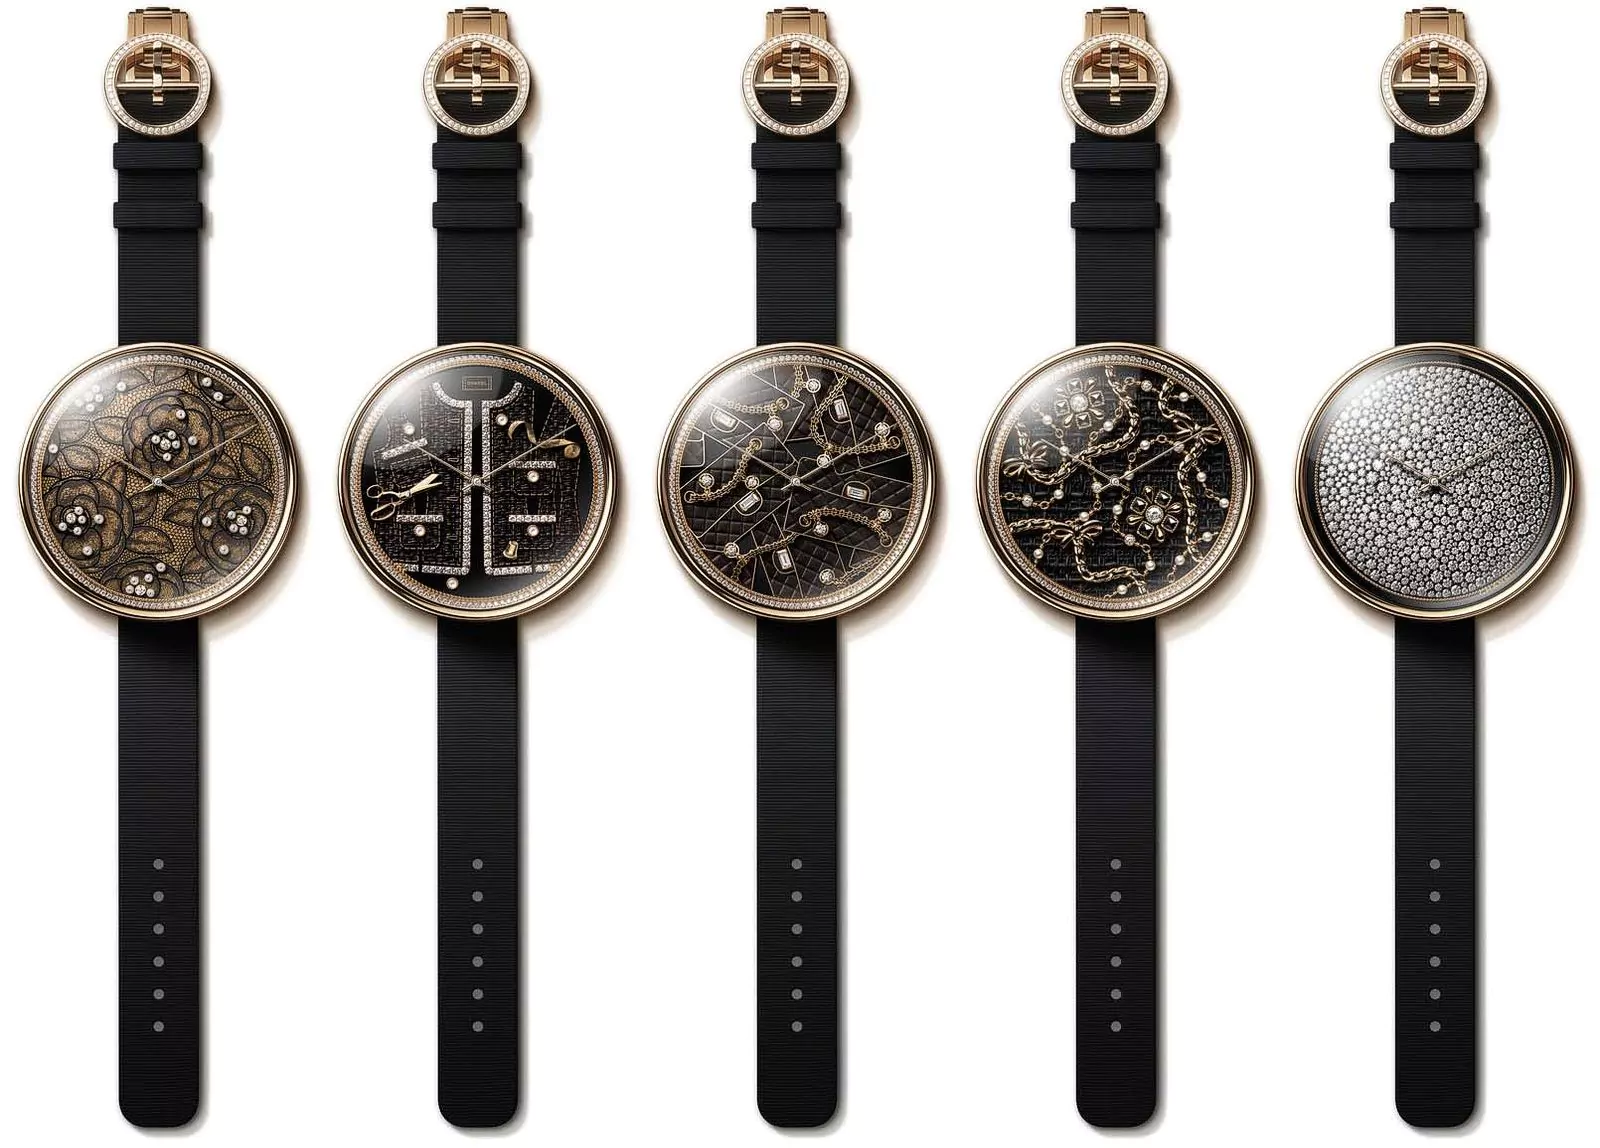 часы Mademoiselle Privé Pique-Aiguilles вдохновлены наручной игольницей Габриэль Шанель, фото 2